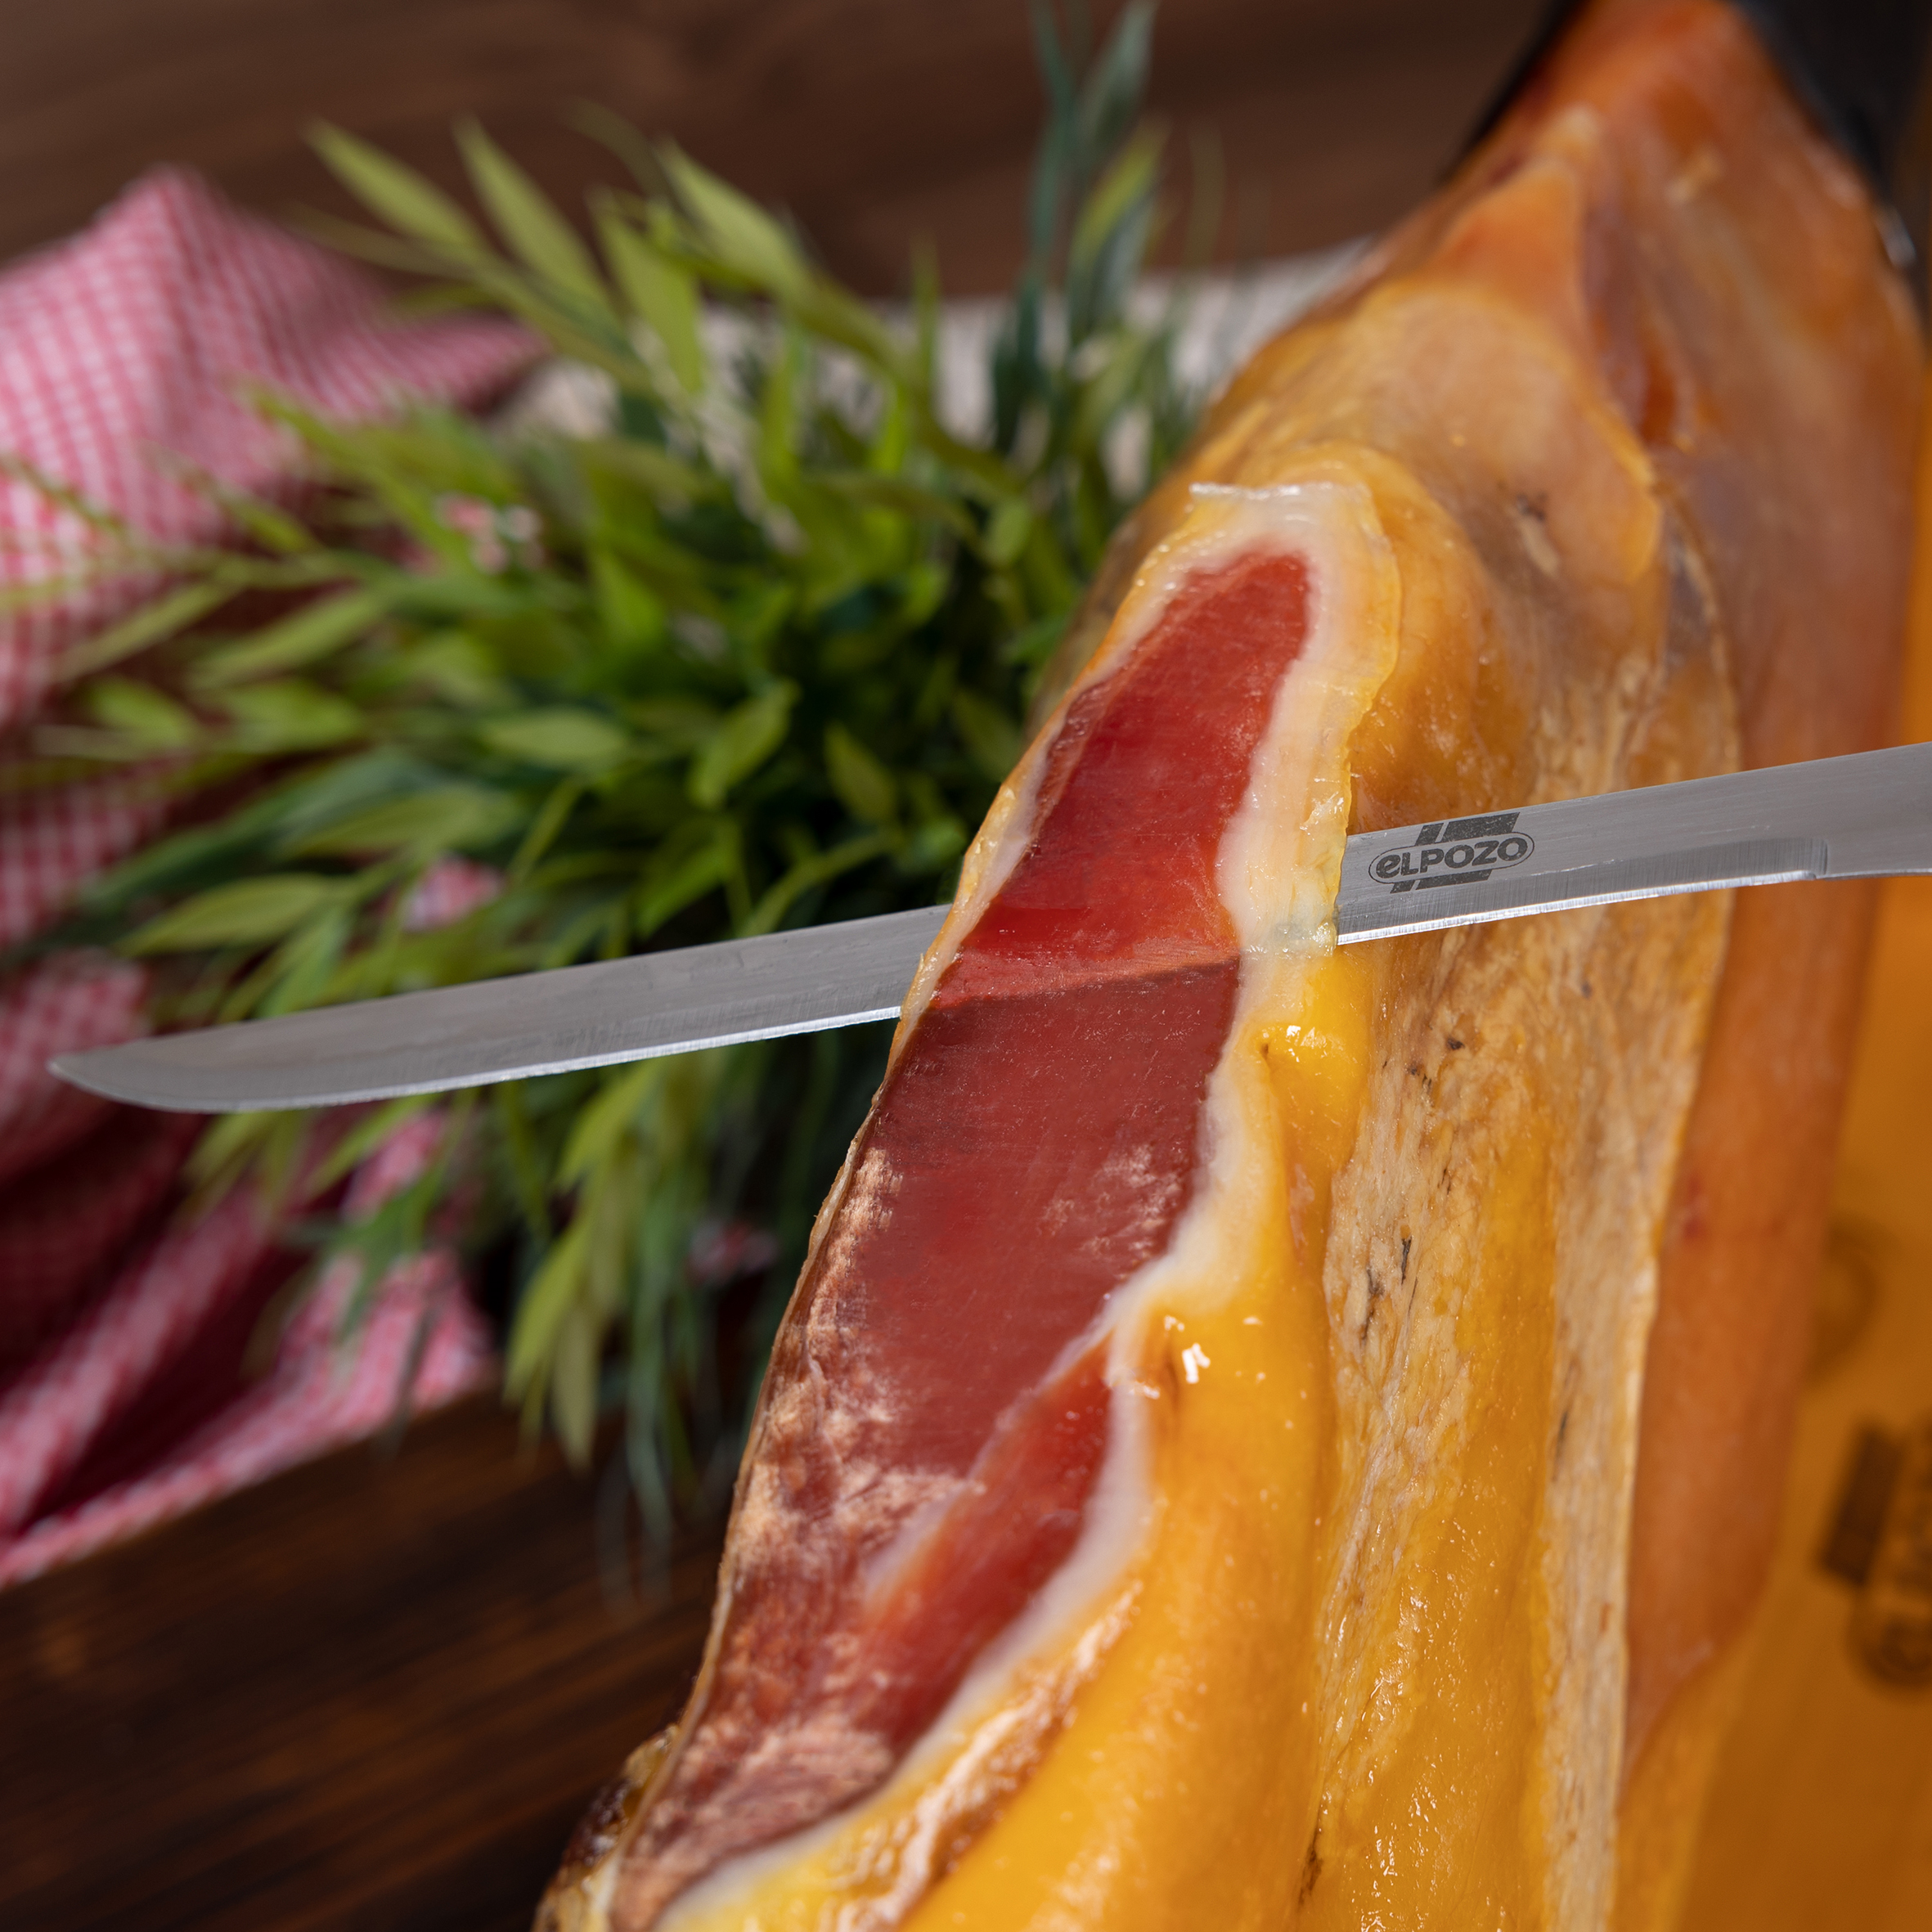 Wurstbarons spanischer Serranoschinken inklusive Messerset und Ständer